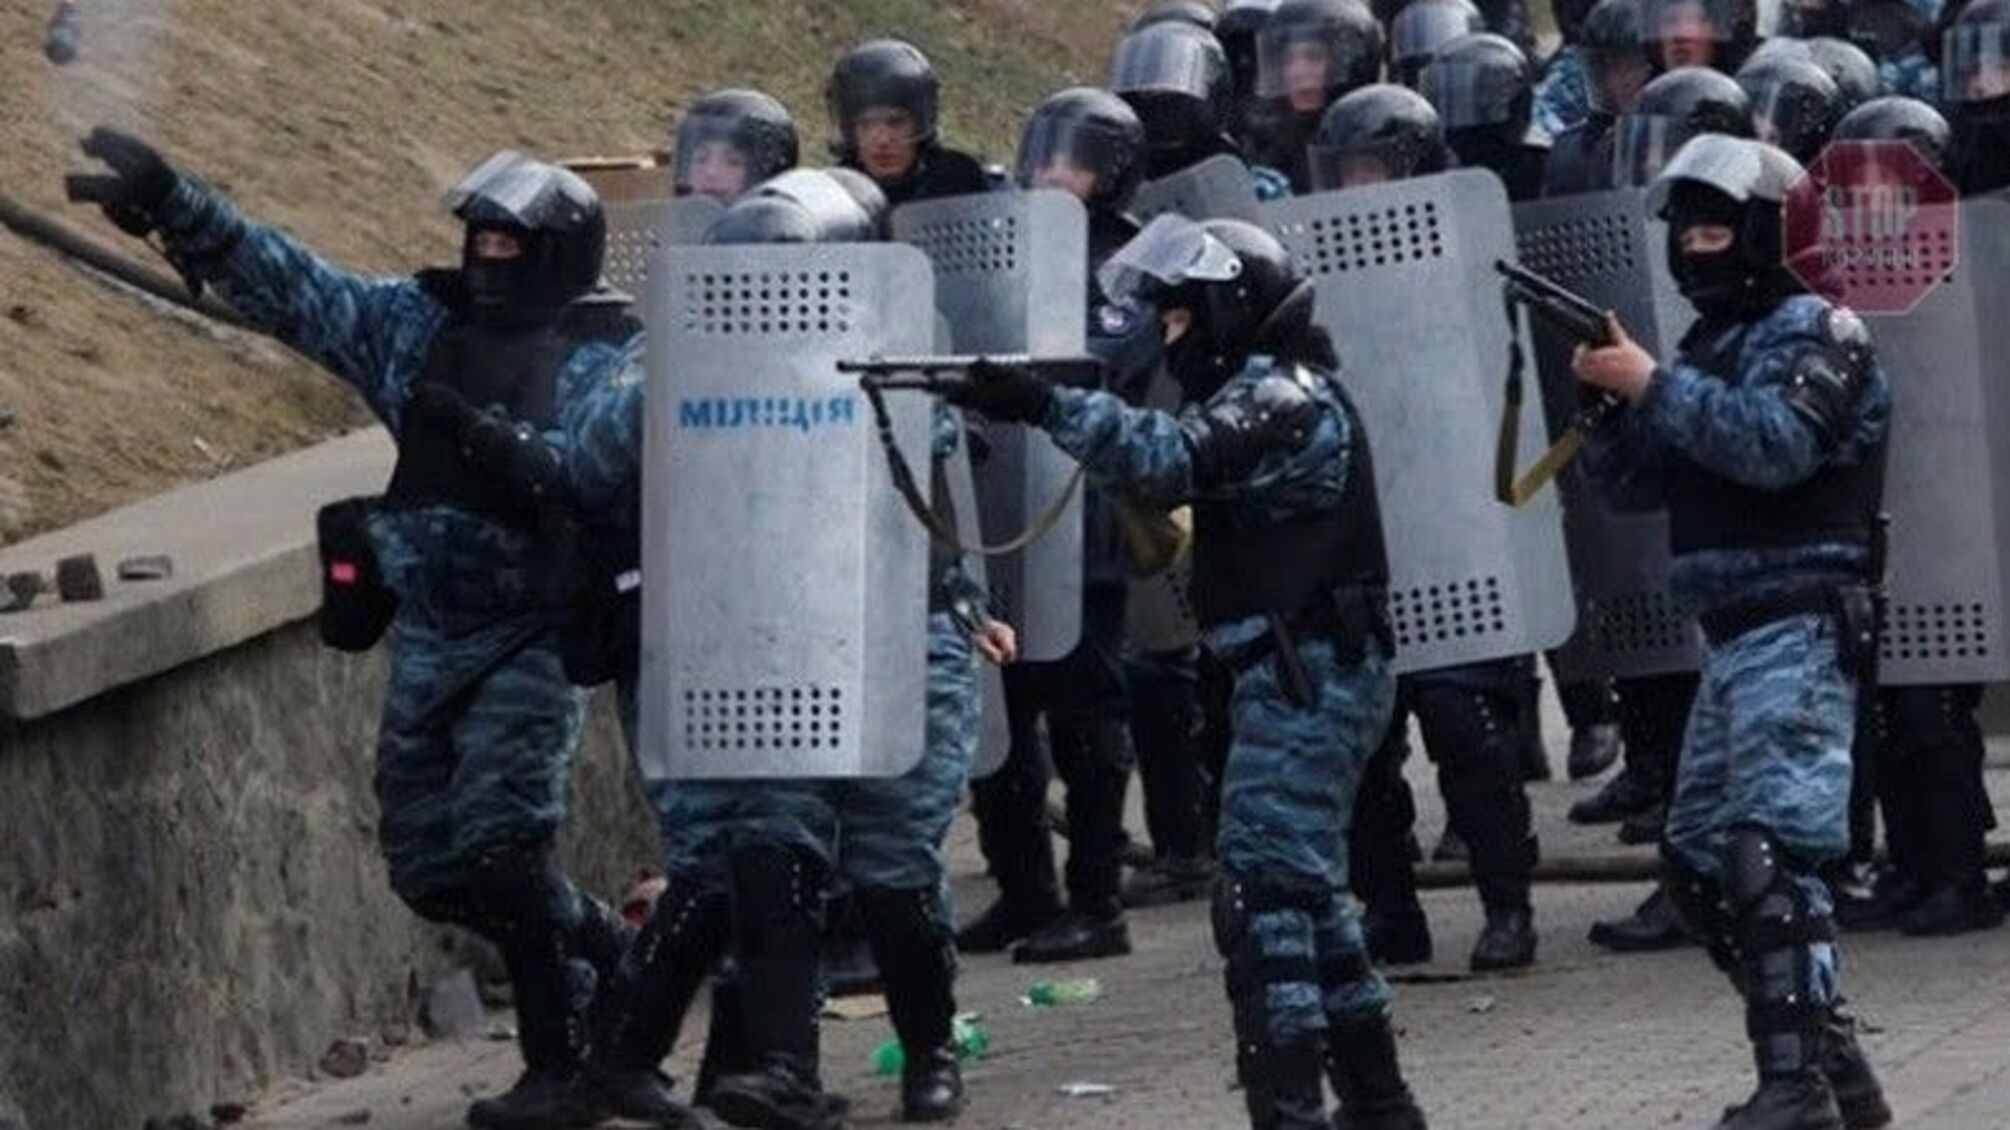 Милиционеры, которые обеспечили ввоз спецсредств с России для разгона Евромайдана, до сих пор работают в МВД